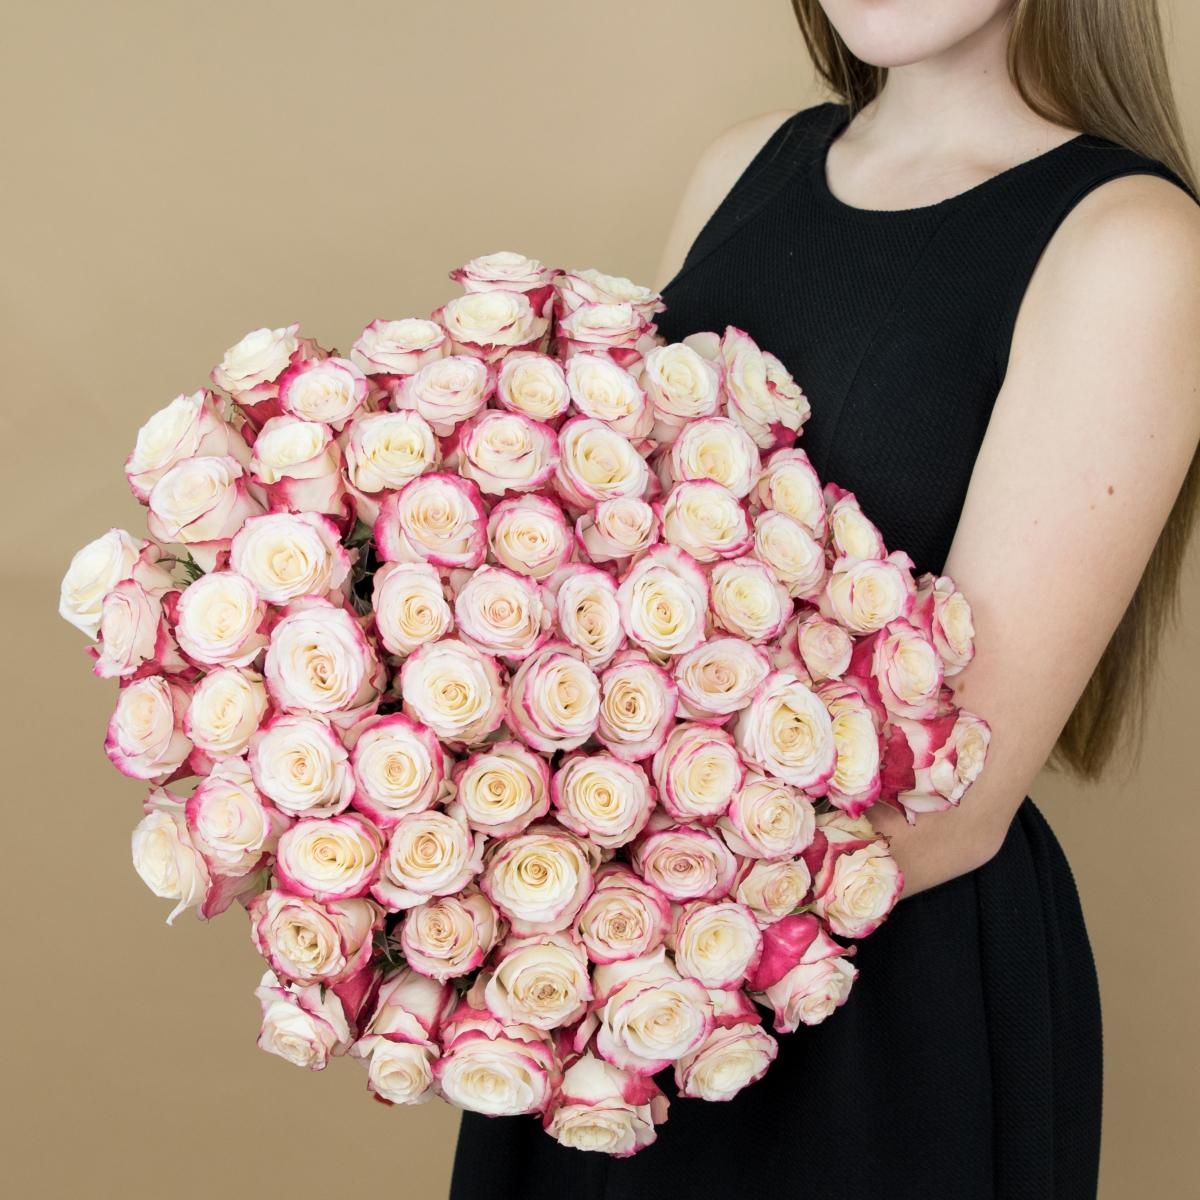 Розы красно-белые 101 шт. (40 см) код товара - 82236